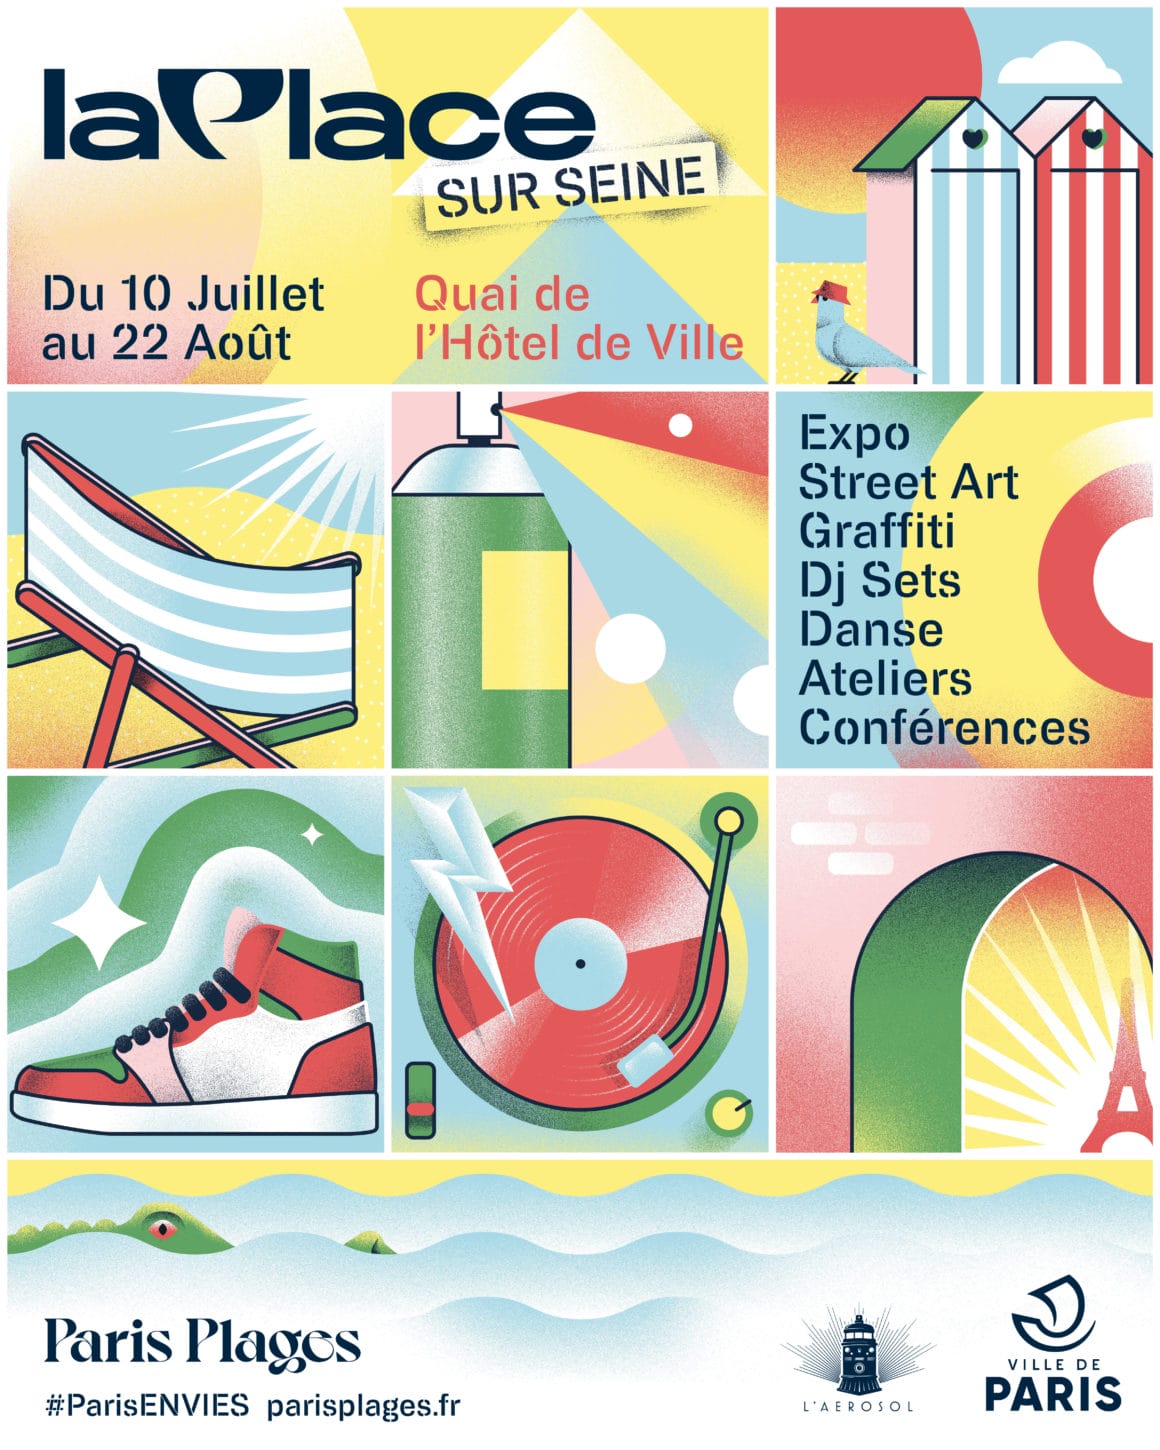 Affiche promotionnel pour l'événement La Place.